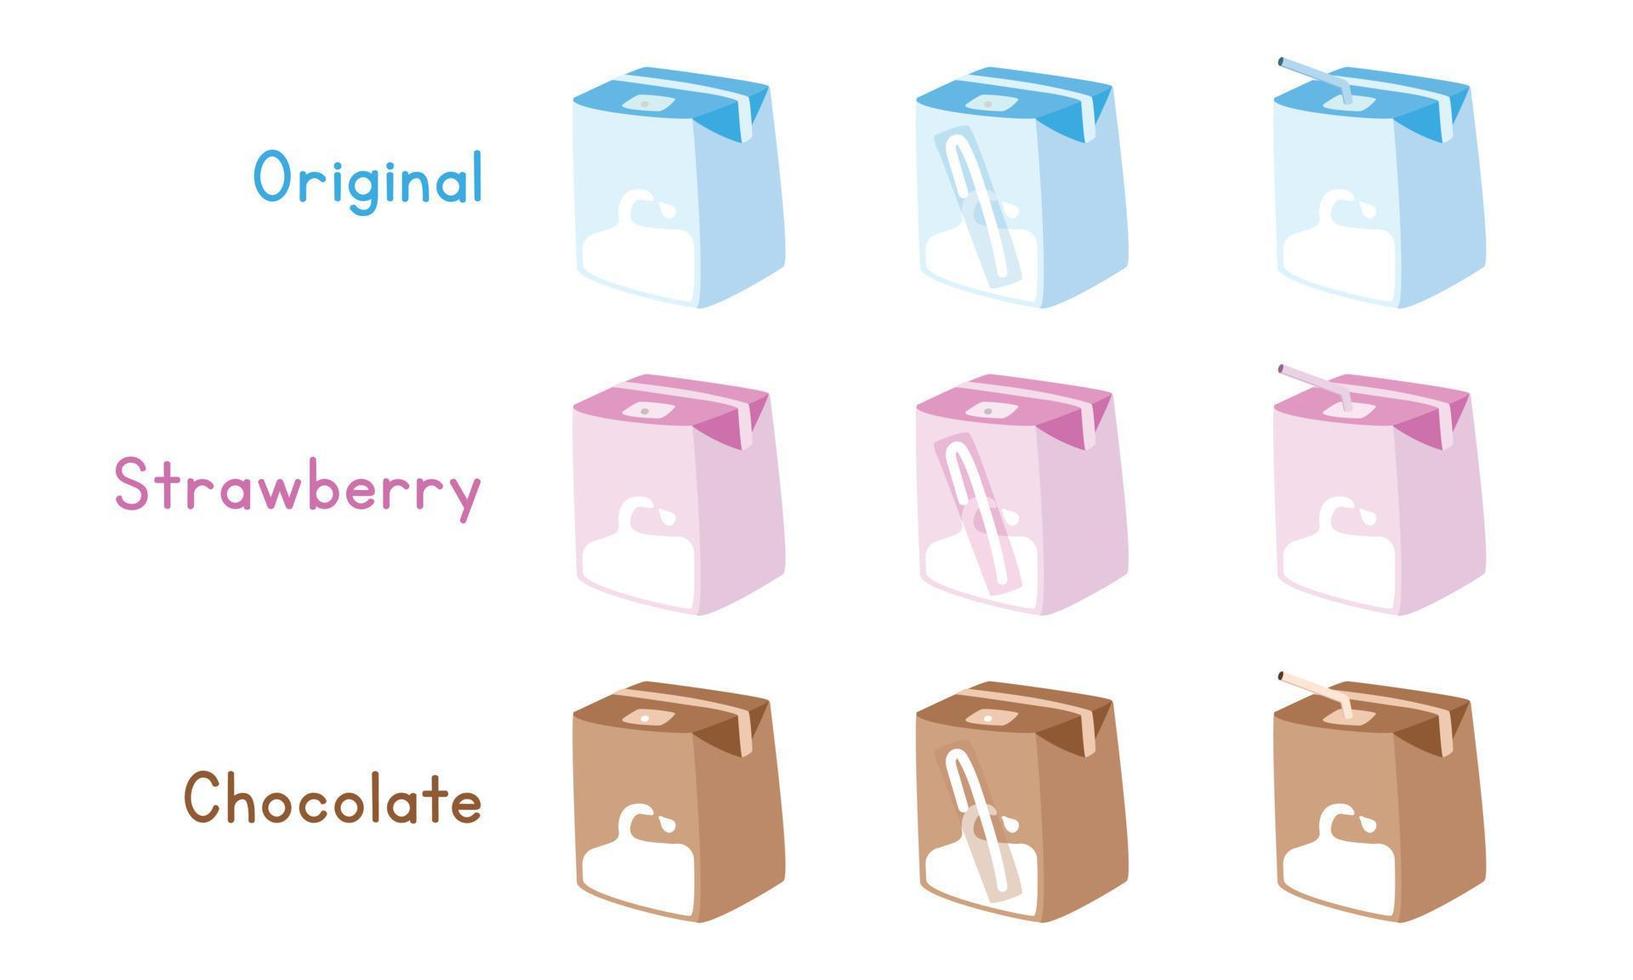 reeks van normaal, aardbei, chocola melk karton doos vector ontwerp. blauw, roze, bruin melk dozen dozen met rietje clip art. melk dozen verschillend smaken tekenfilm stijl schattig tekening. zuivel Product